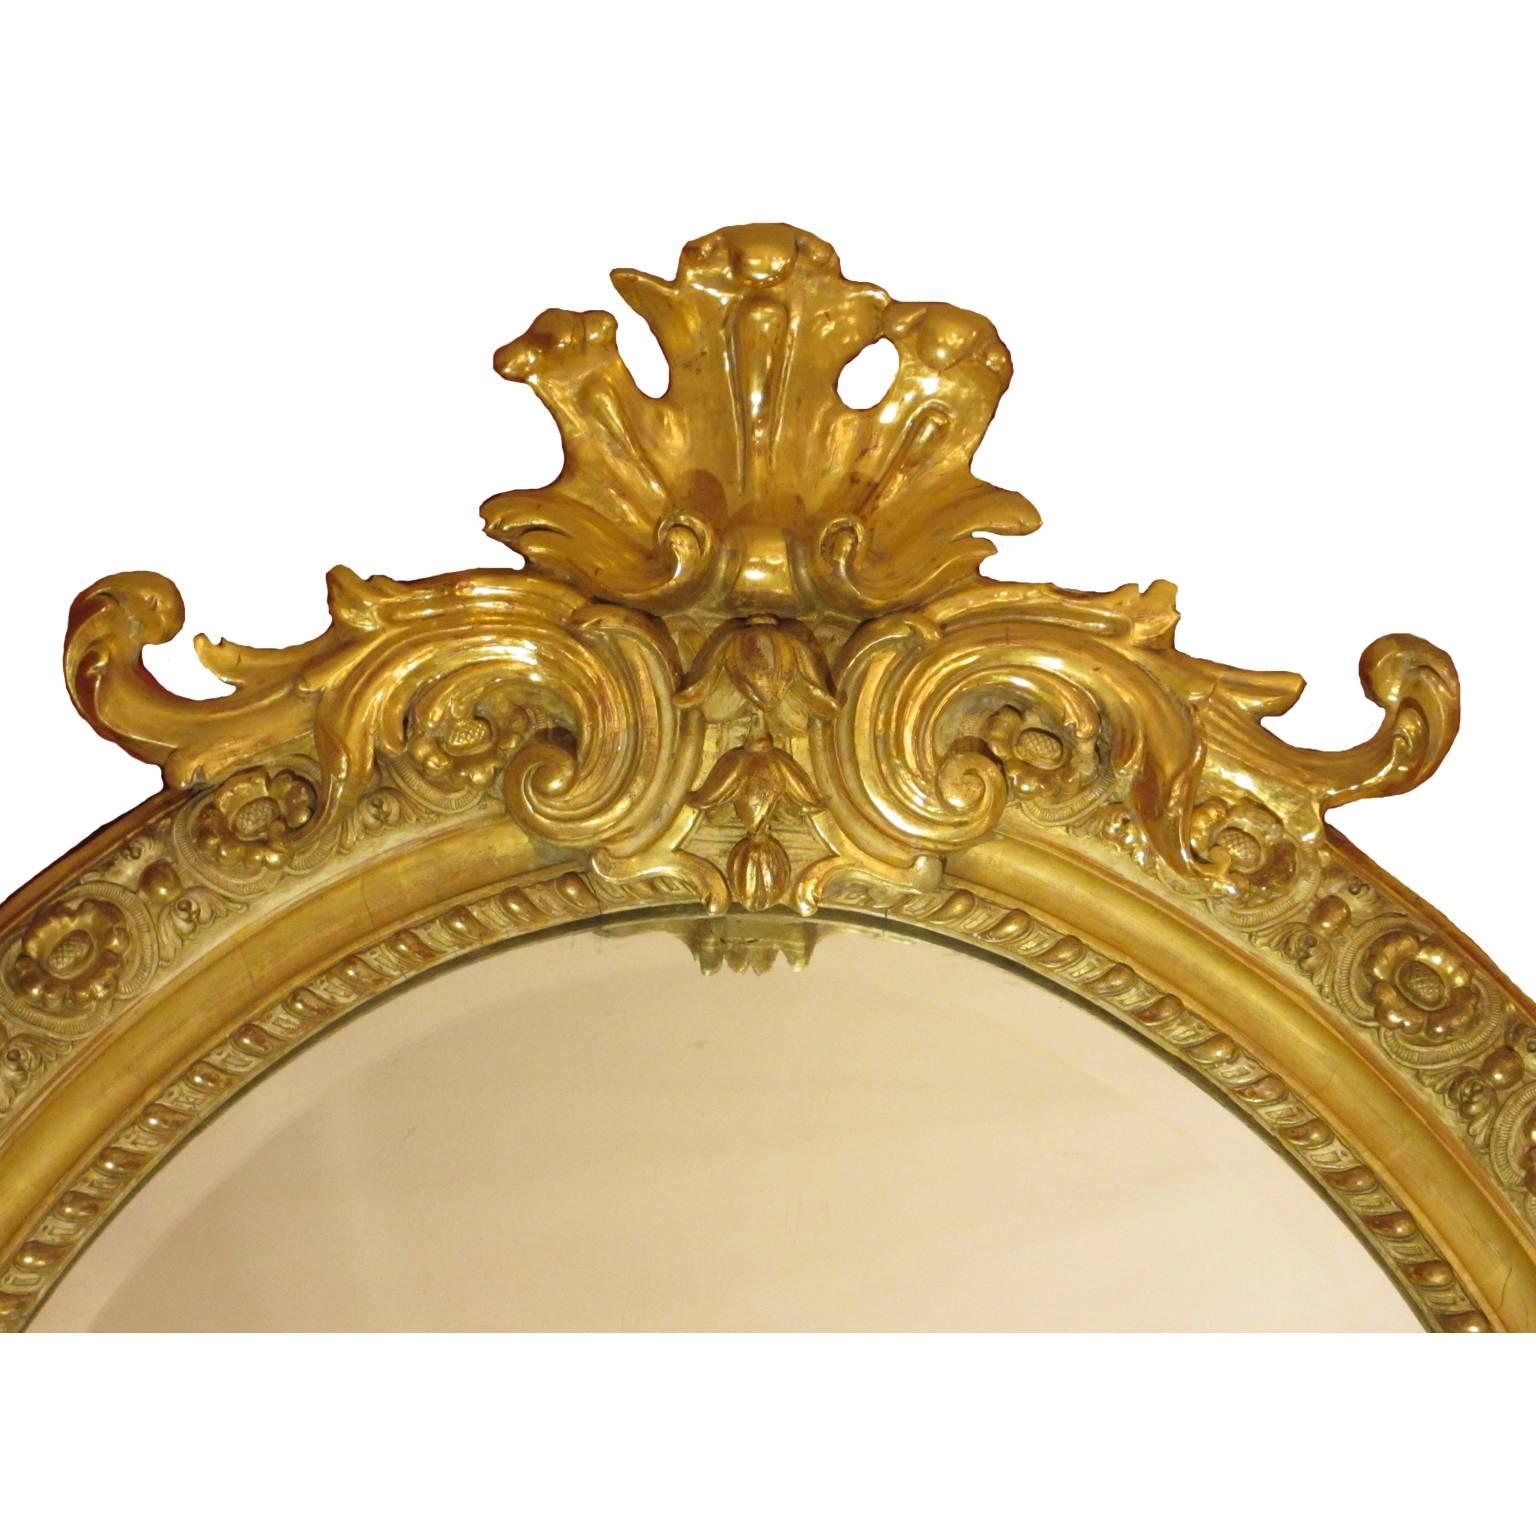 Eine feine und große Französisch 19. Jahrhundert Louis XVI-Stil Vergoldung und Gesso geschnitzt ovalen Spiegelrahmen mit einer abgeschrägten Glasplatte. Alle Vergoldungen original. Der kunstvoll verzierte Rahmen mit floralem Muster ist mit einem